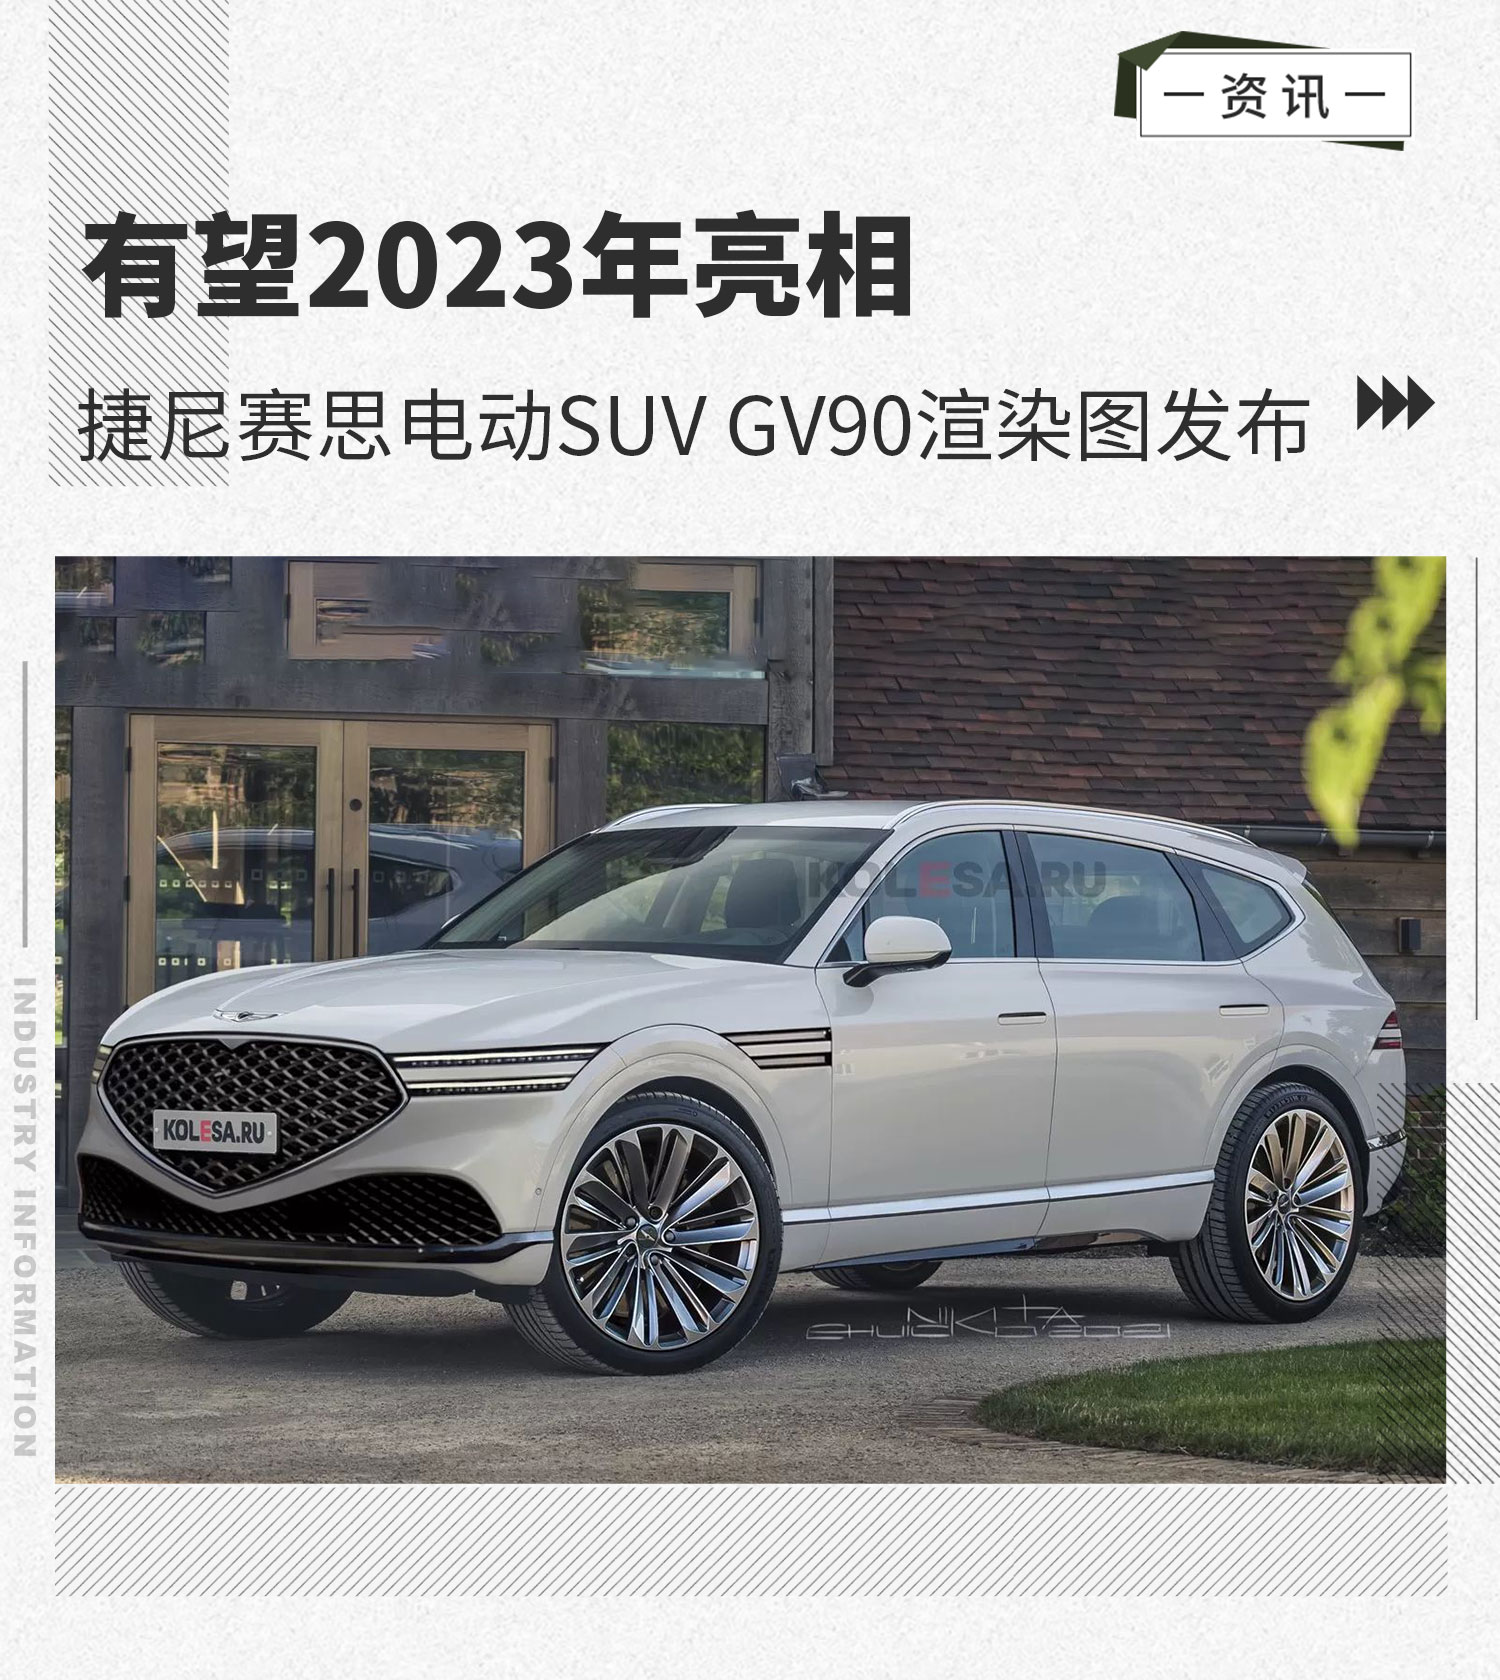 2023年亮相 捷尼赛思电动SUV GV90渲染图发布